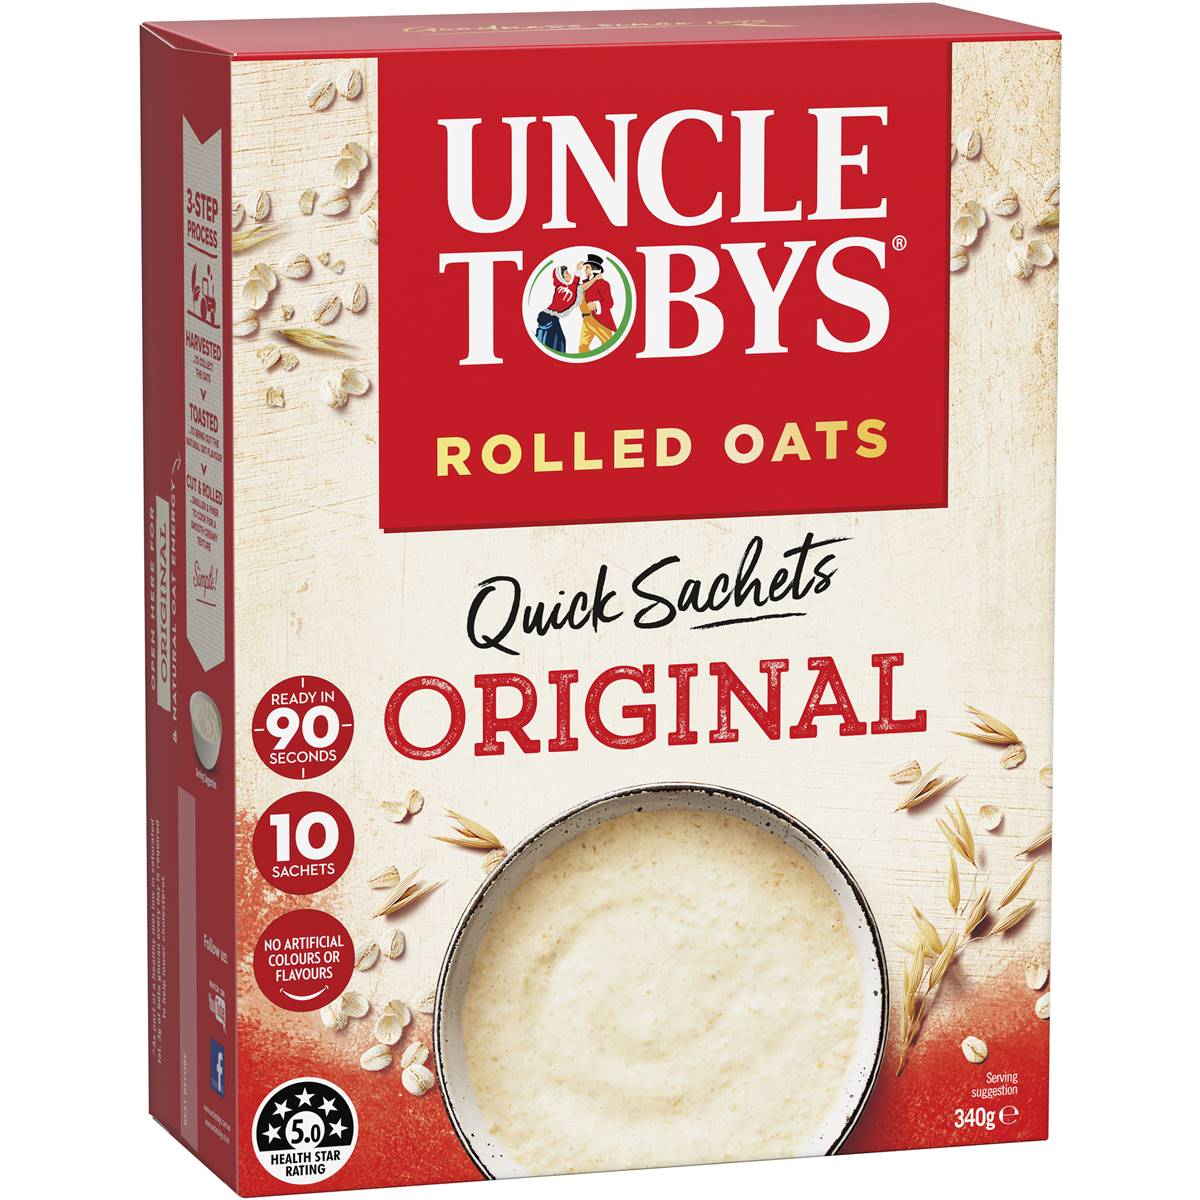 Calories in Uncle Tobys Oats Quick Sachets Original Porridge